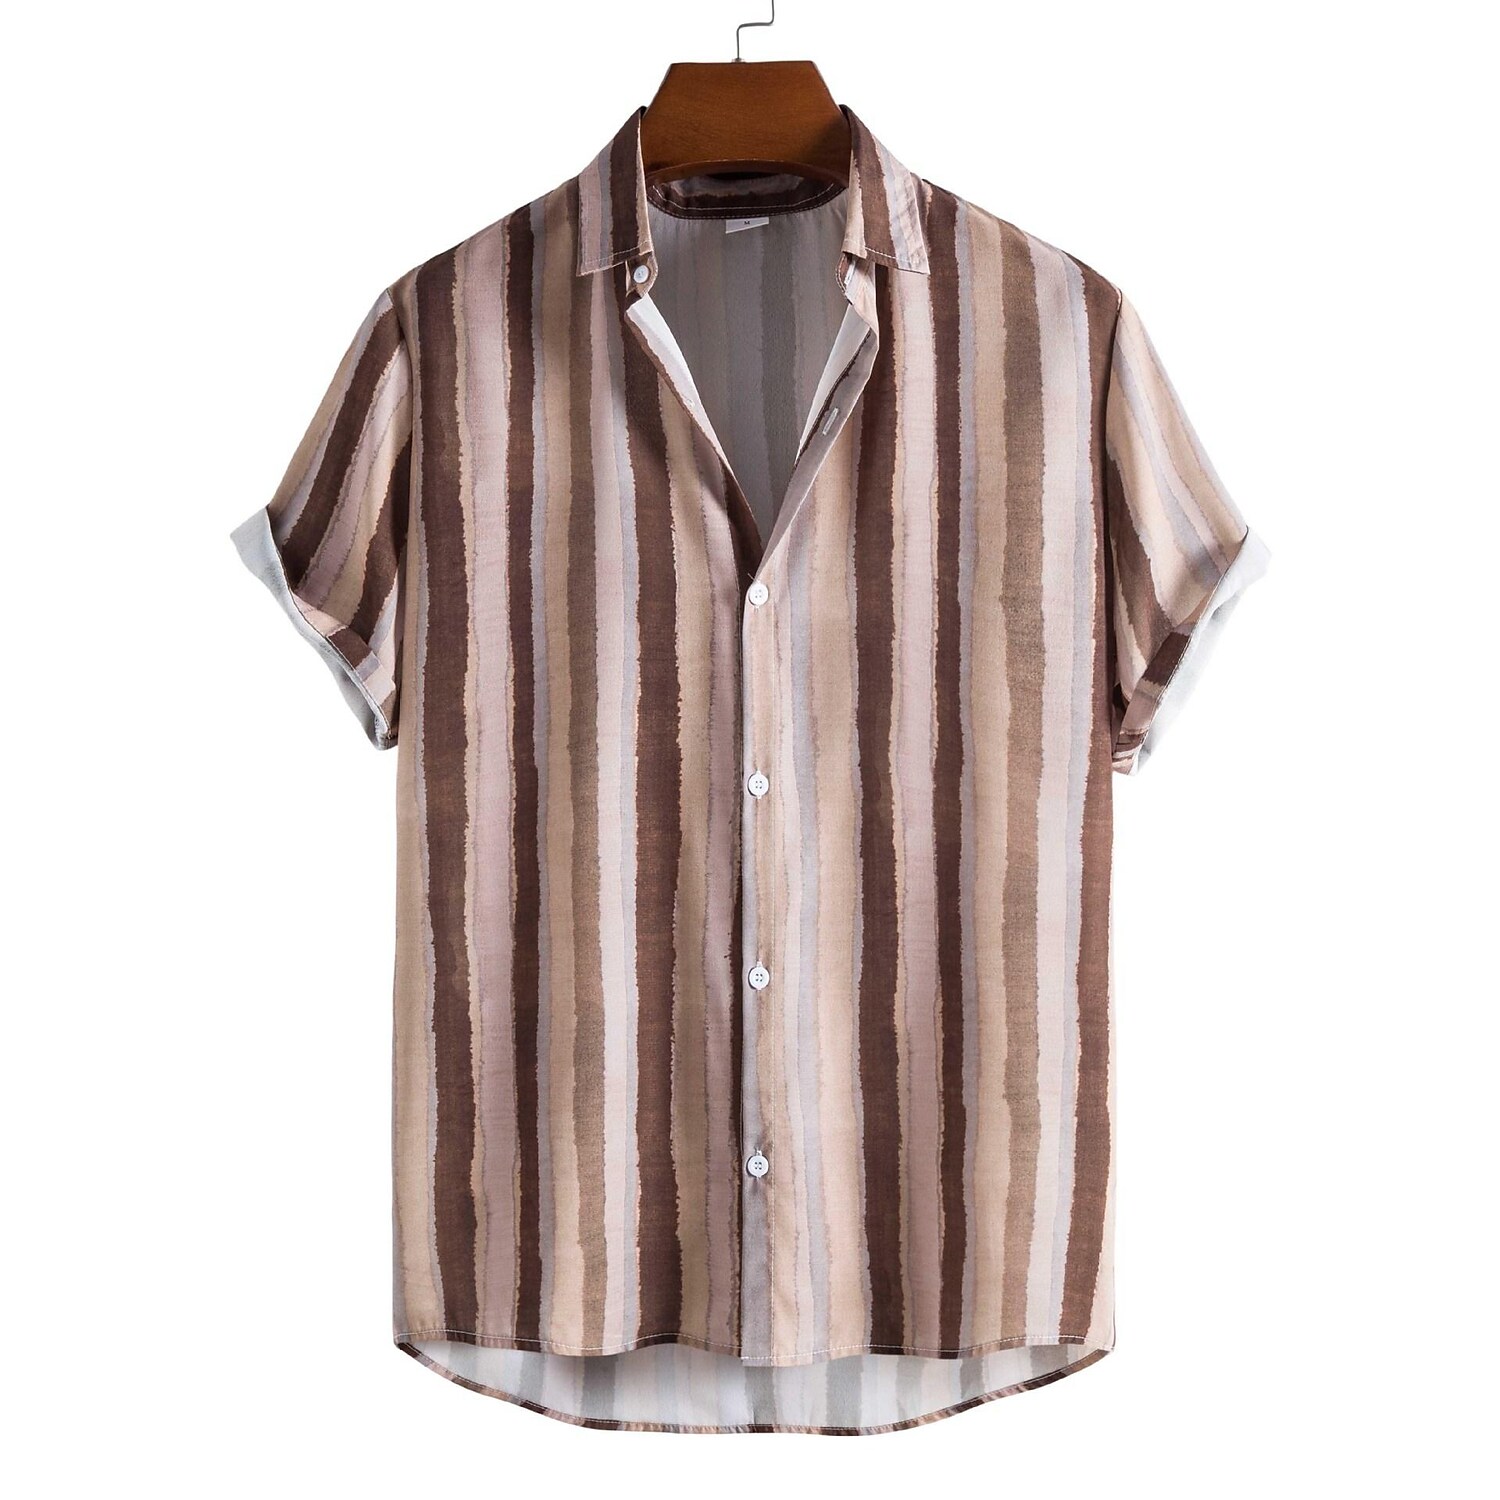 Men's Light Brown Striped Print Short Sleeve Shirt-poisonstreetwear.com